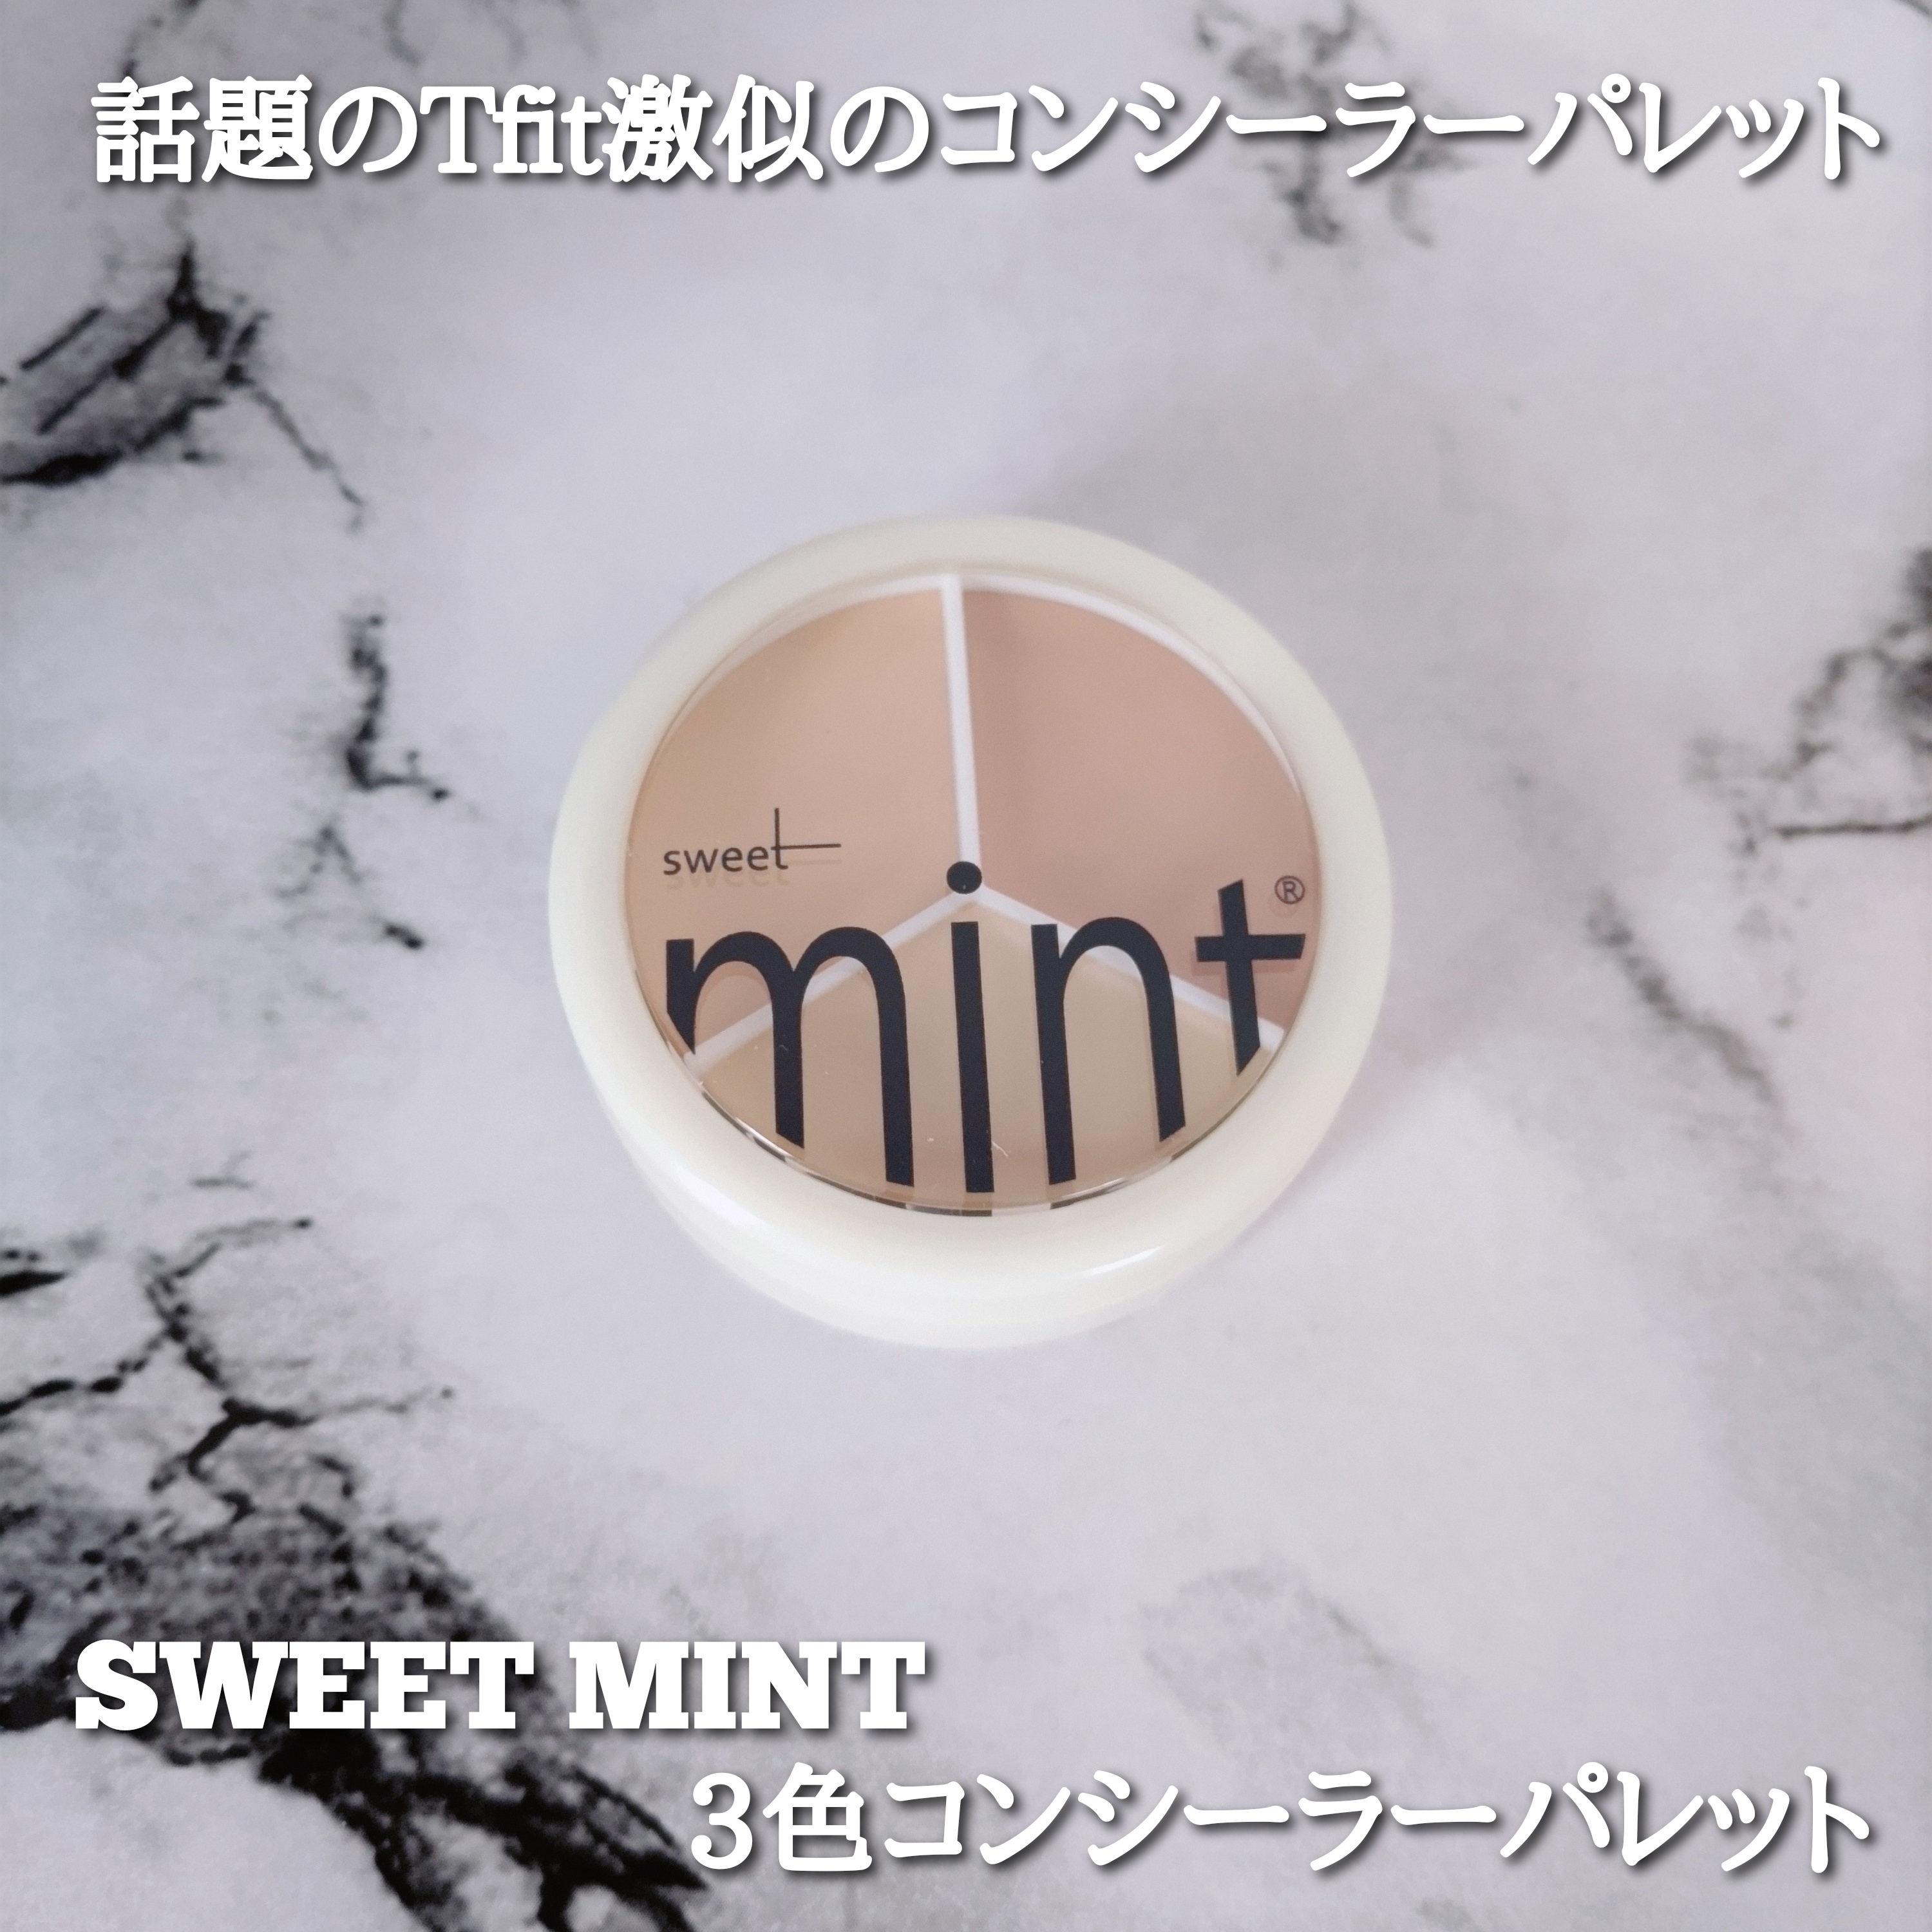 sweet mint(スウィートミント) 3色コンシーラーパレットの良い点・メリットに関するYuKaRi♡さんの口コミ画像1